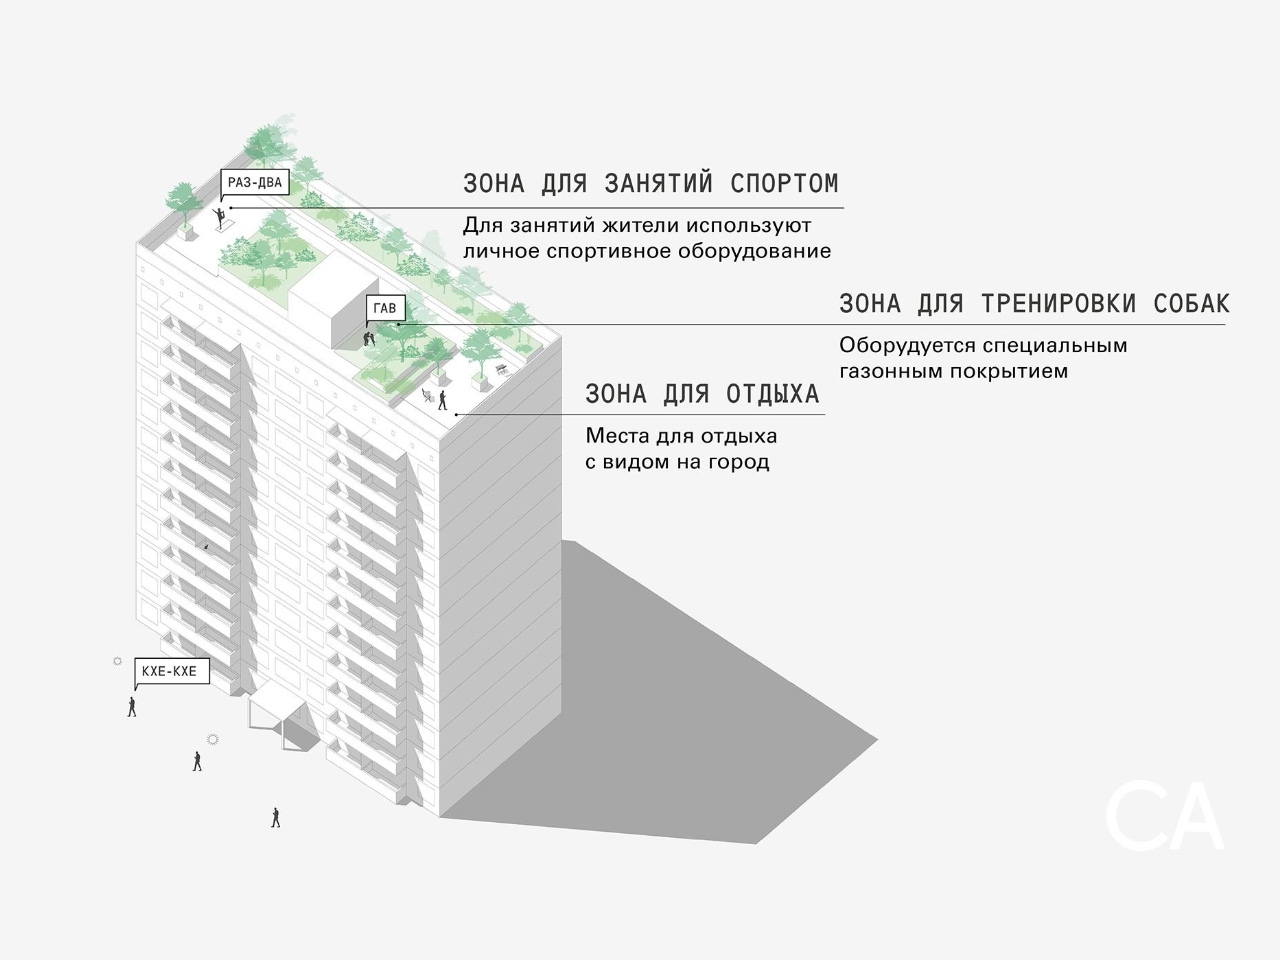 Мини-парк на крыше  допускается российскими строительными нормами. Доступ сюда имеют только жители дома